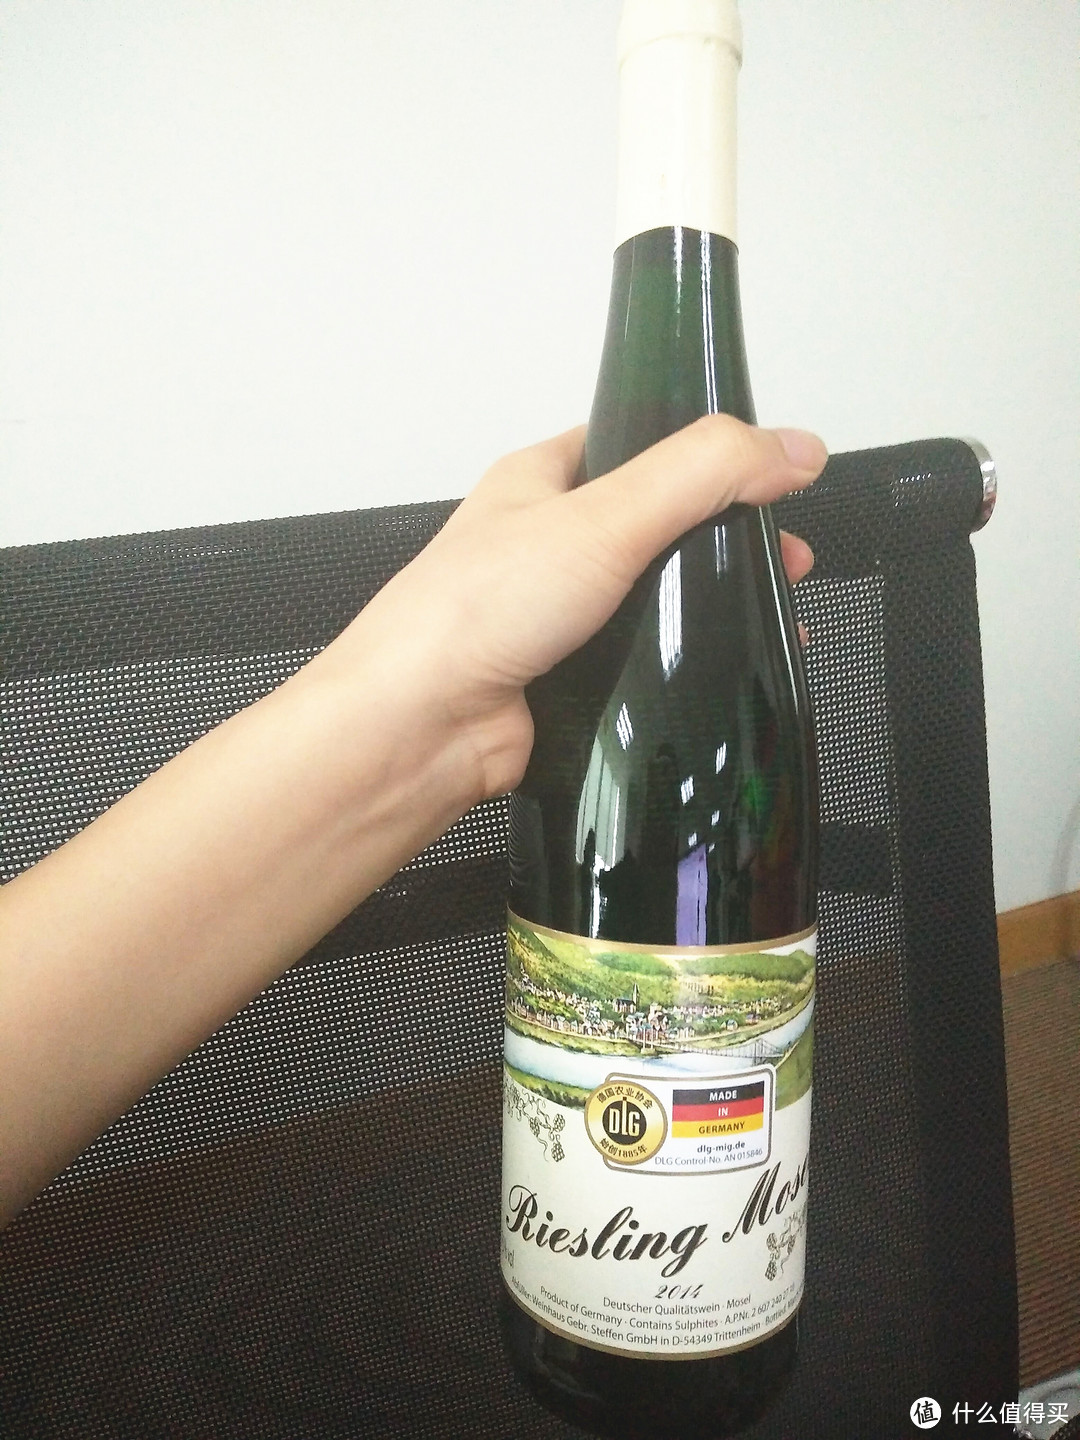 100元以内的德国葡萄酒推荐—京东篇